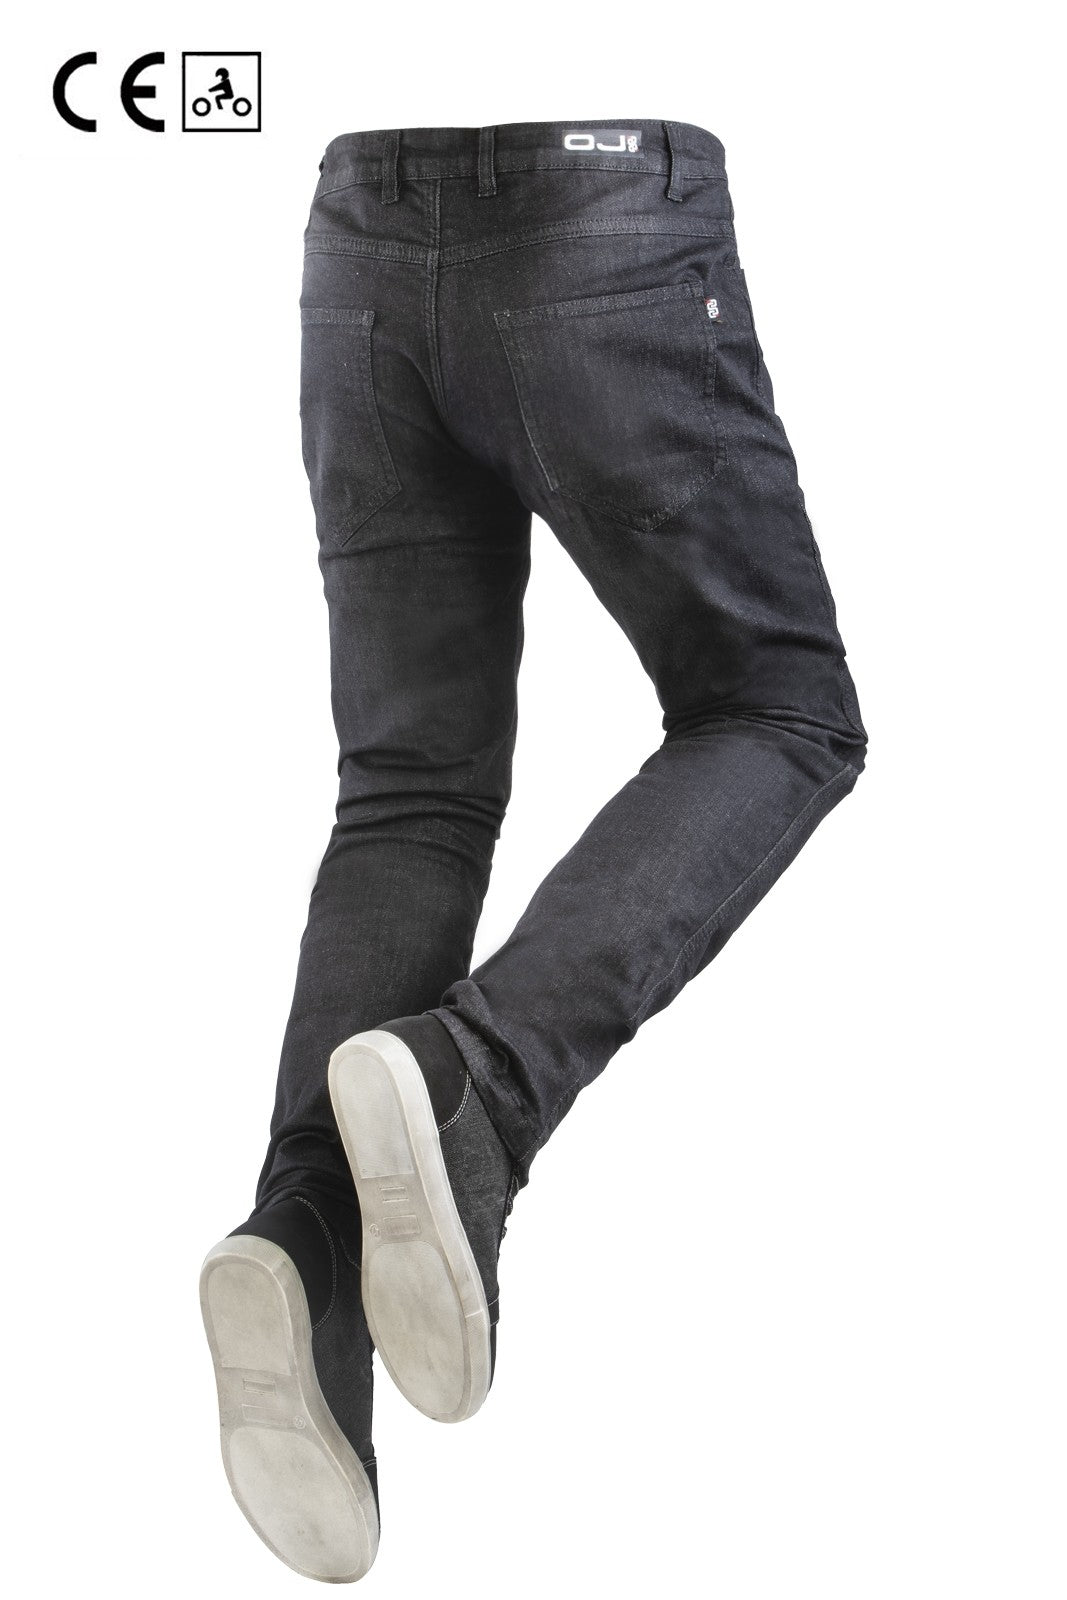 Jeans moto OJ DARKEN MAN per uomo elasticizzati con protezioni estraib –